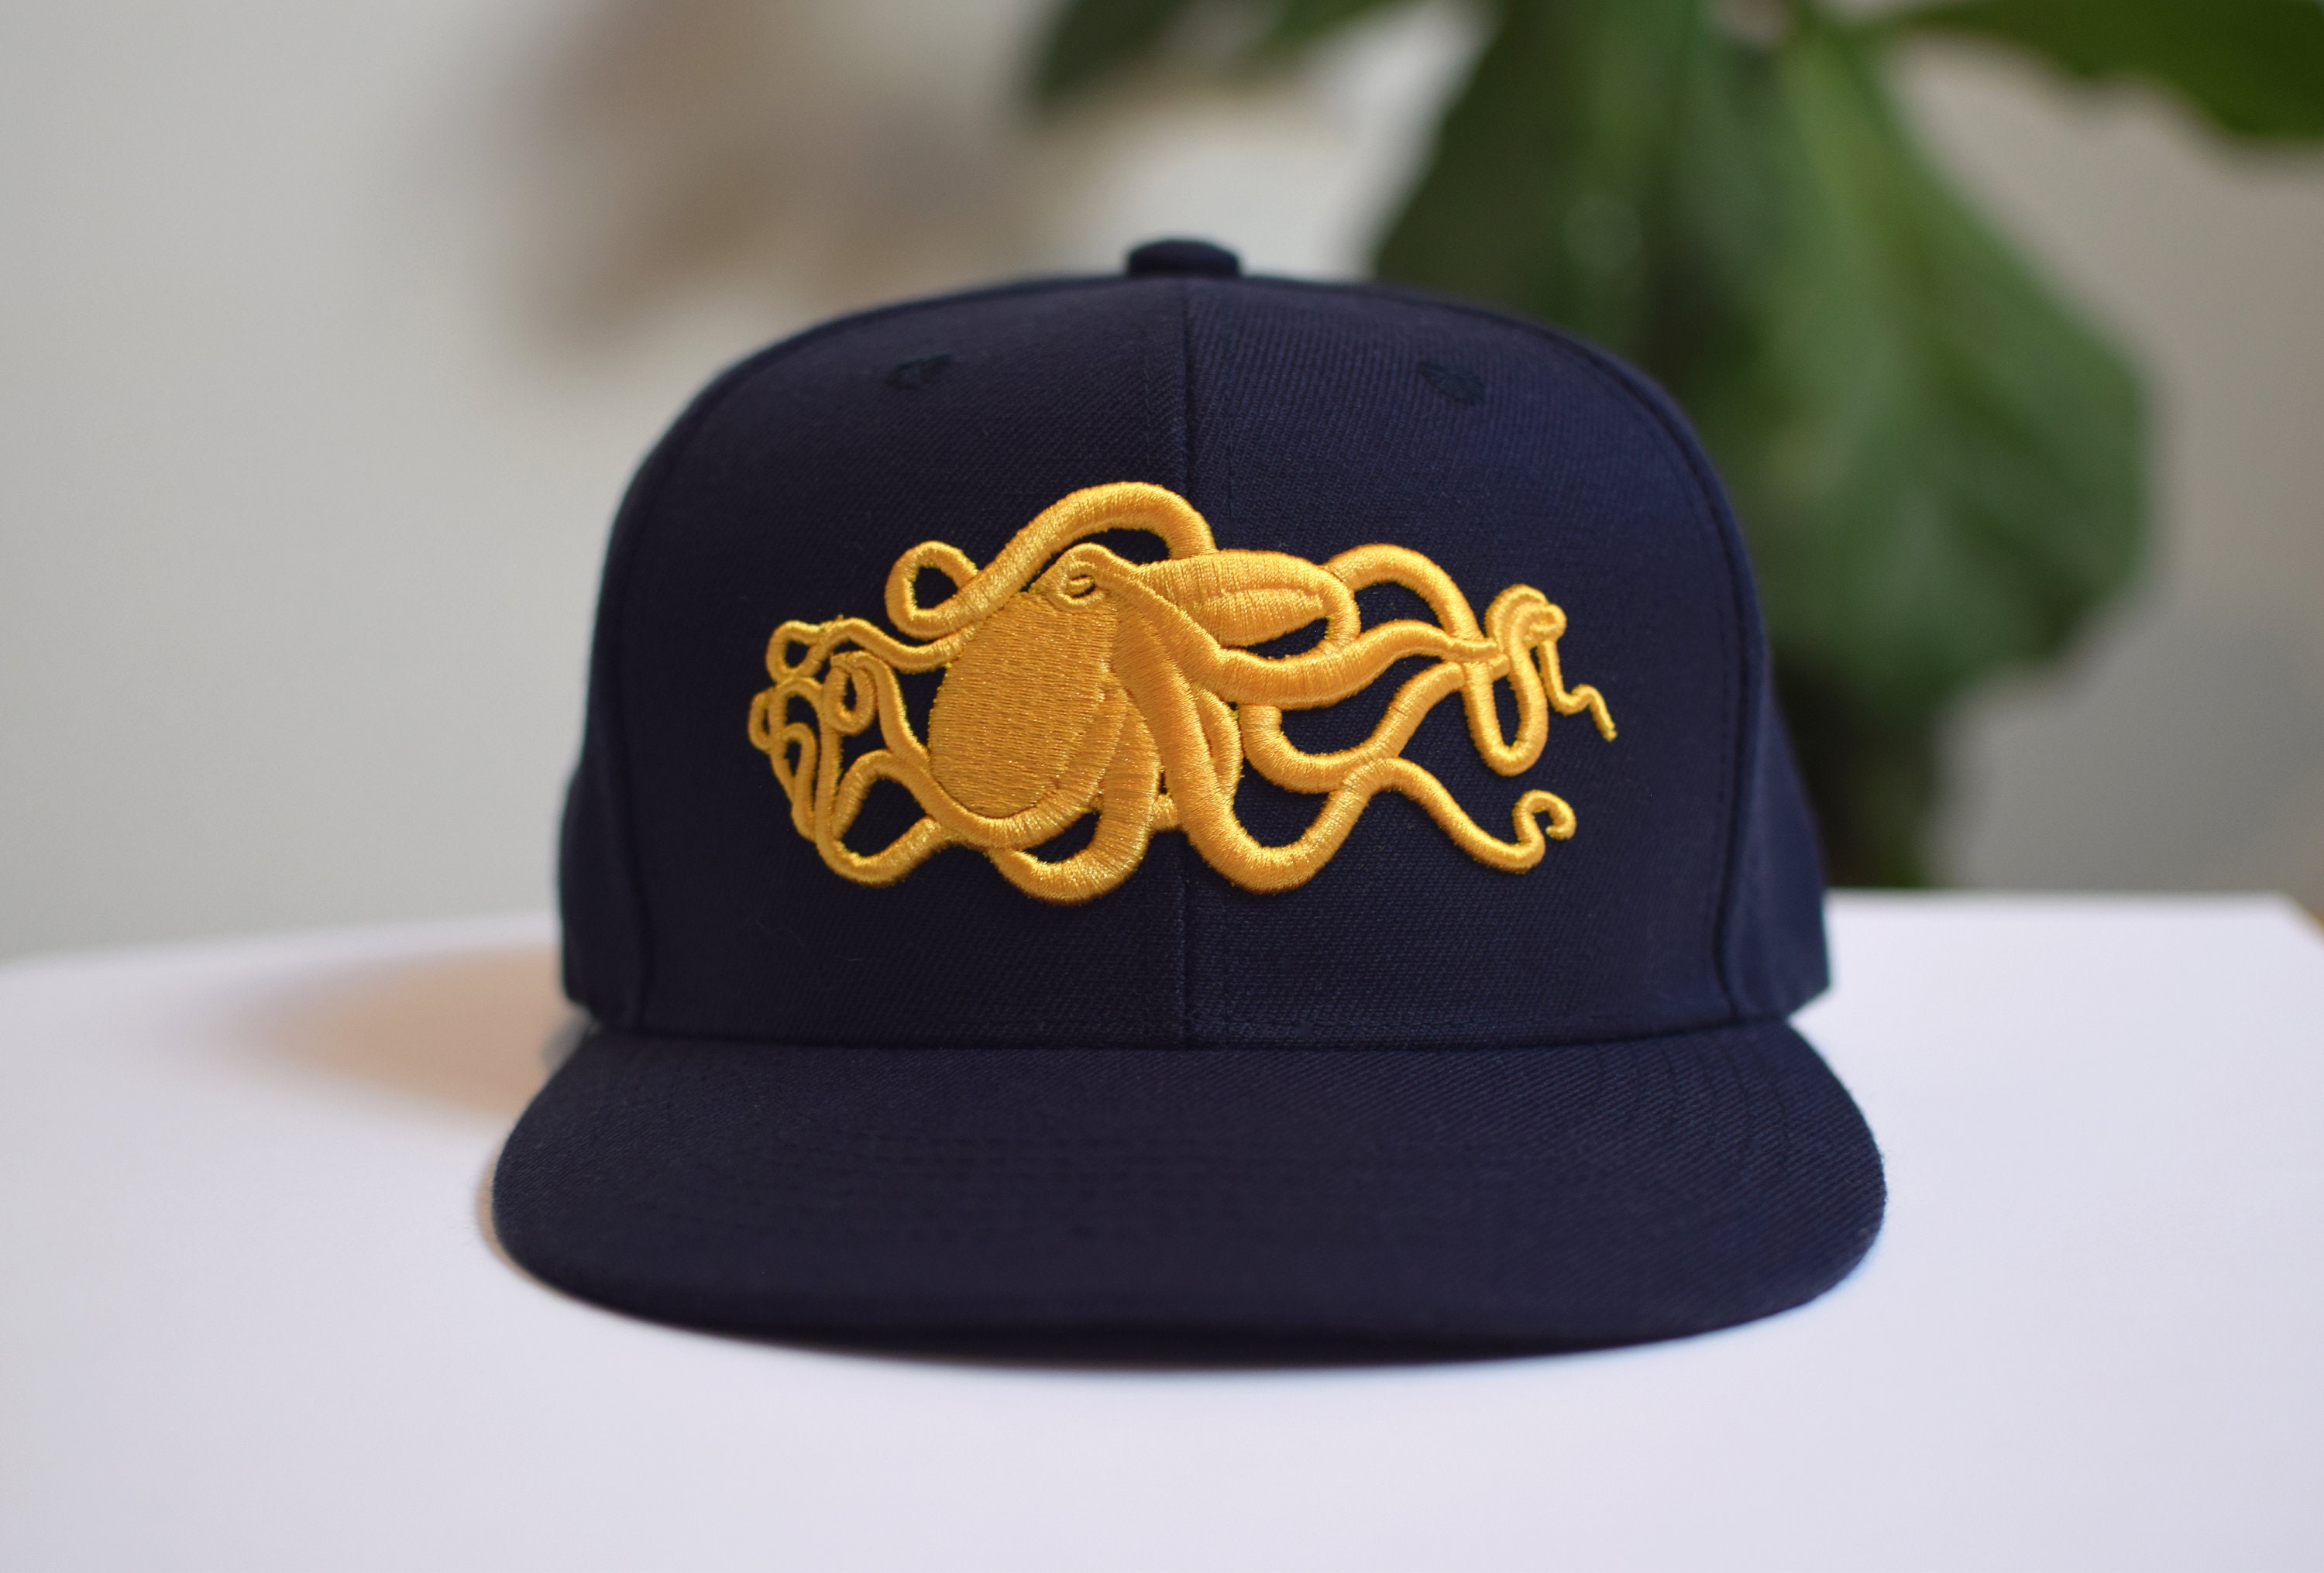 Blue Octopus Hat - Etsy